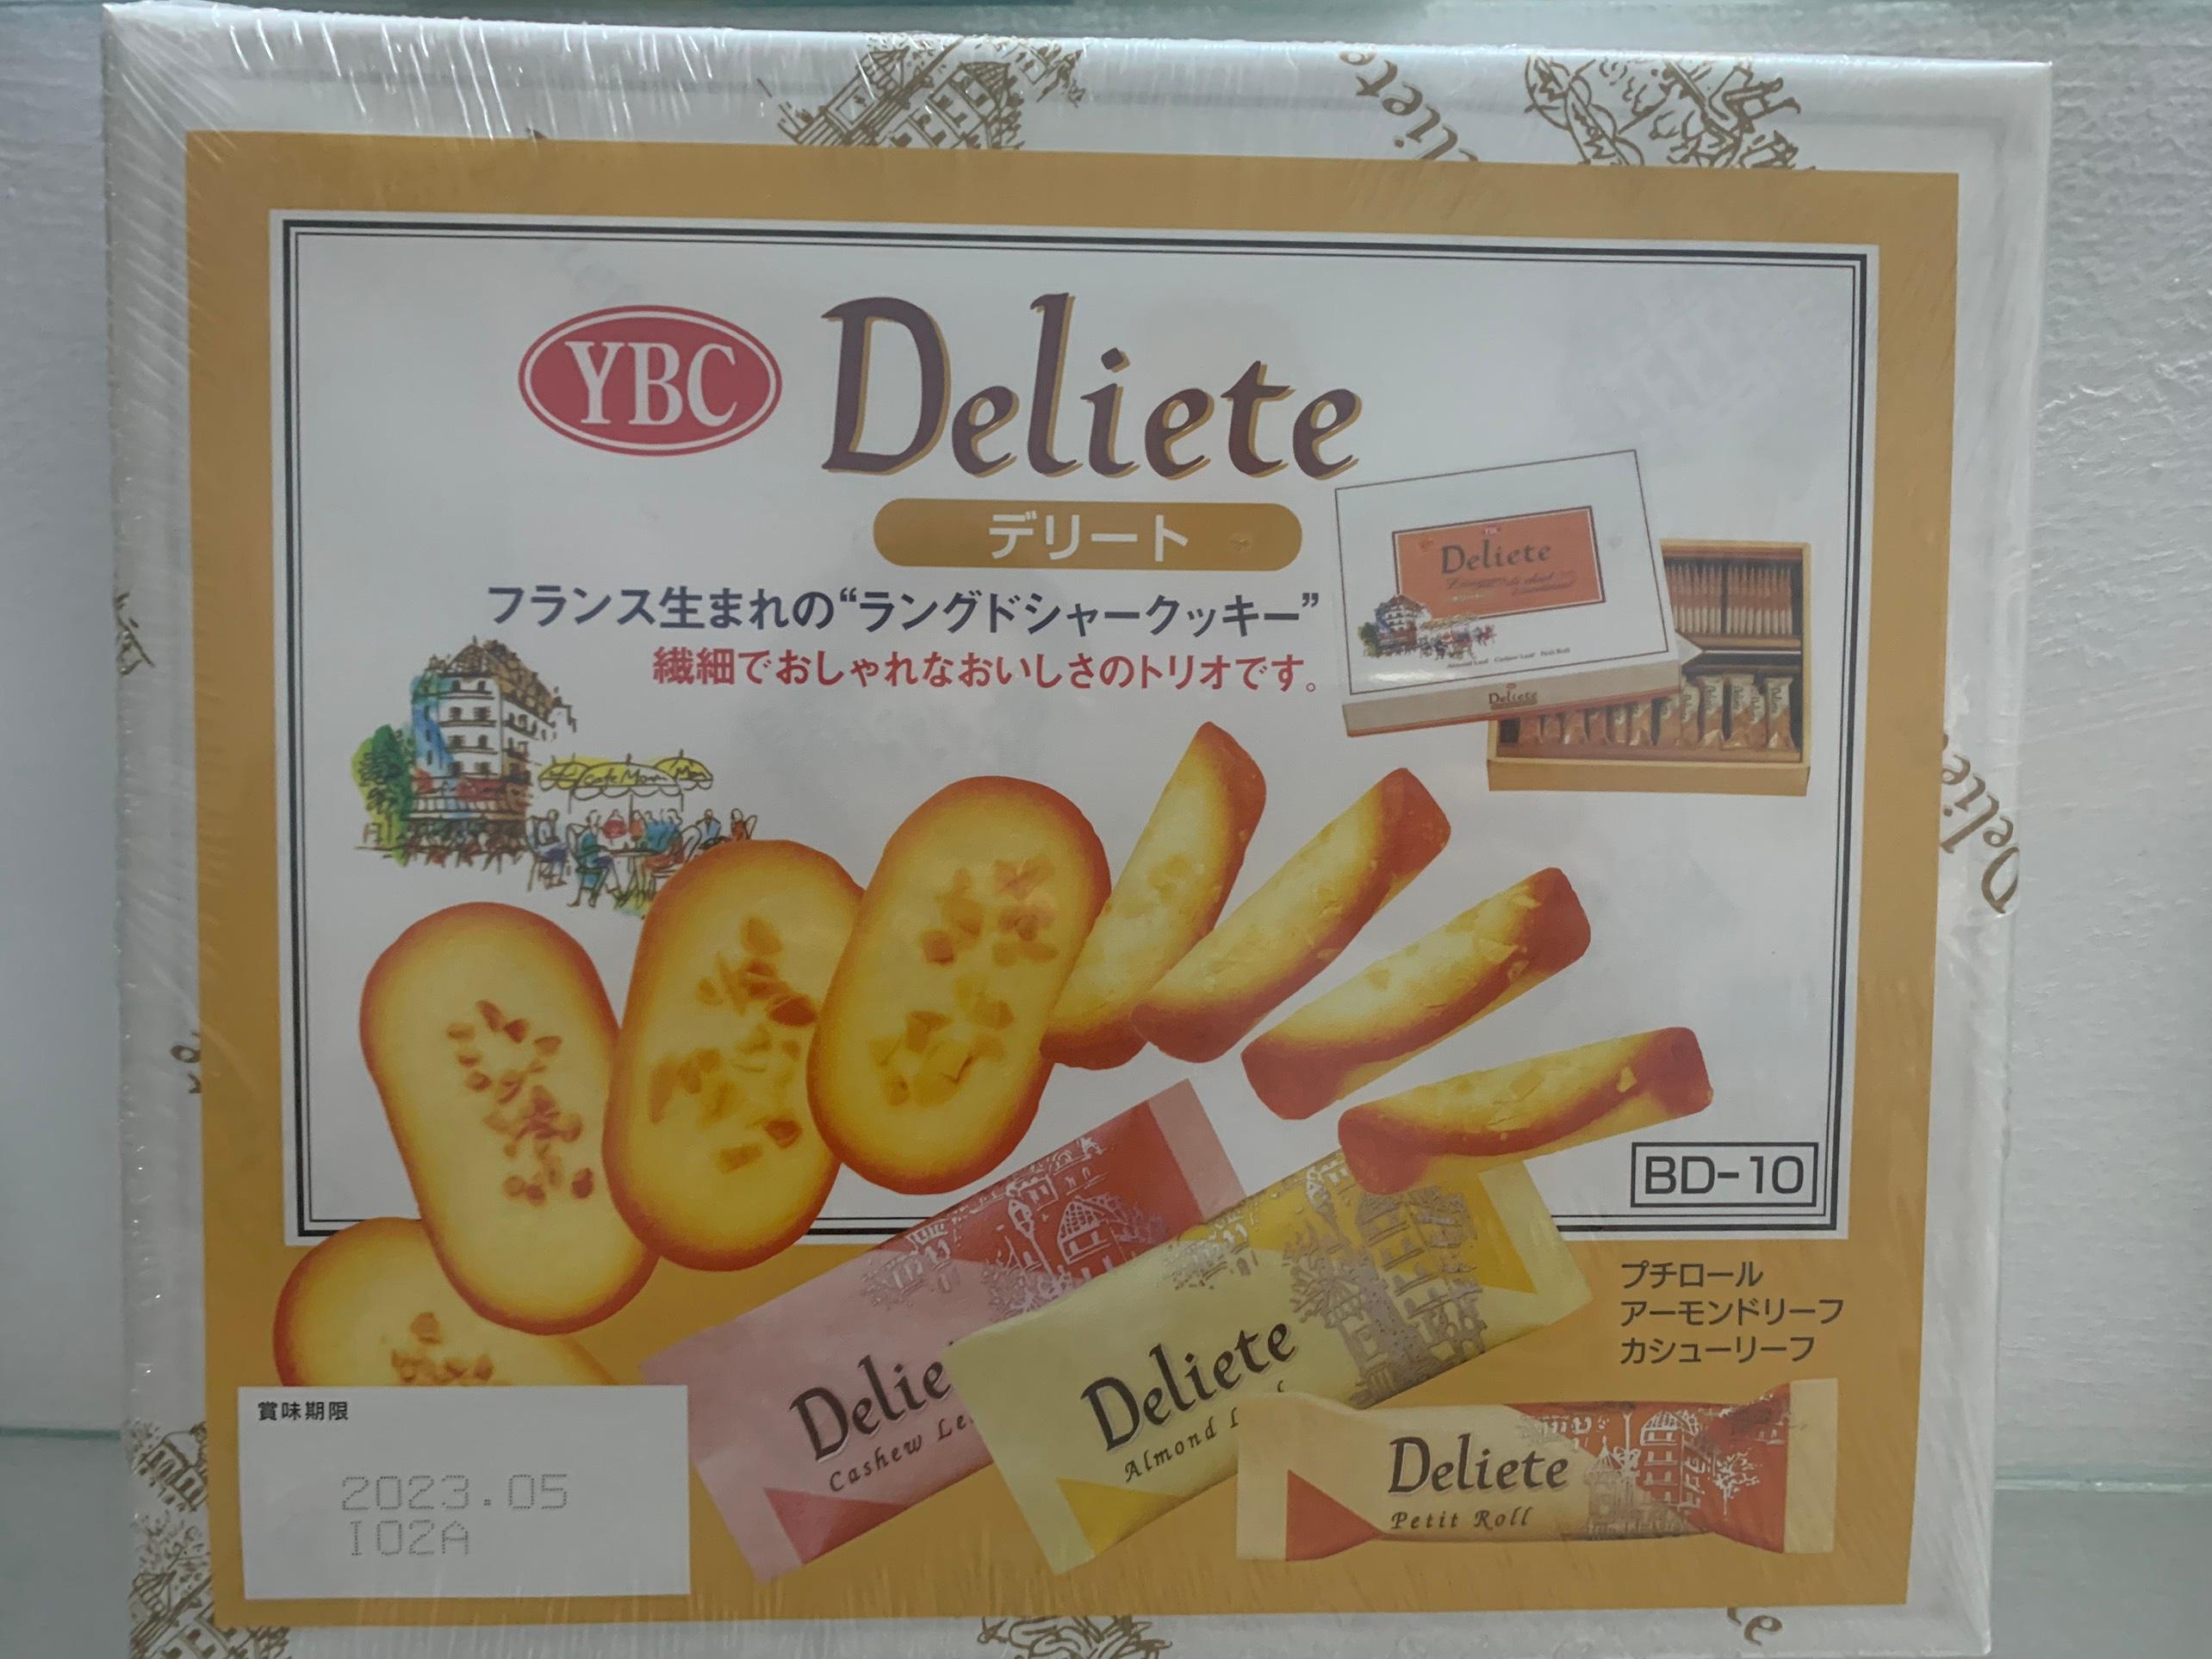 Bánh quy tổng hợp YBC Deliete cao cấp 60 cái Nhật Bản